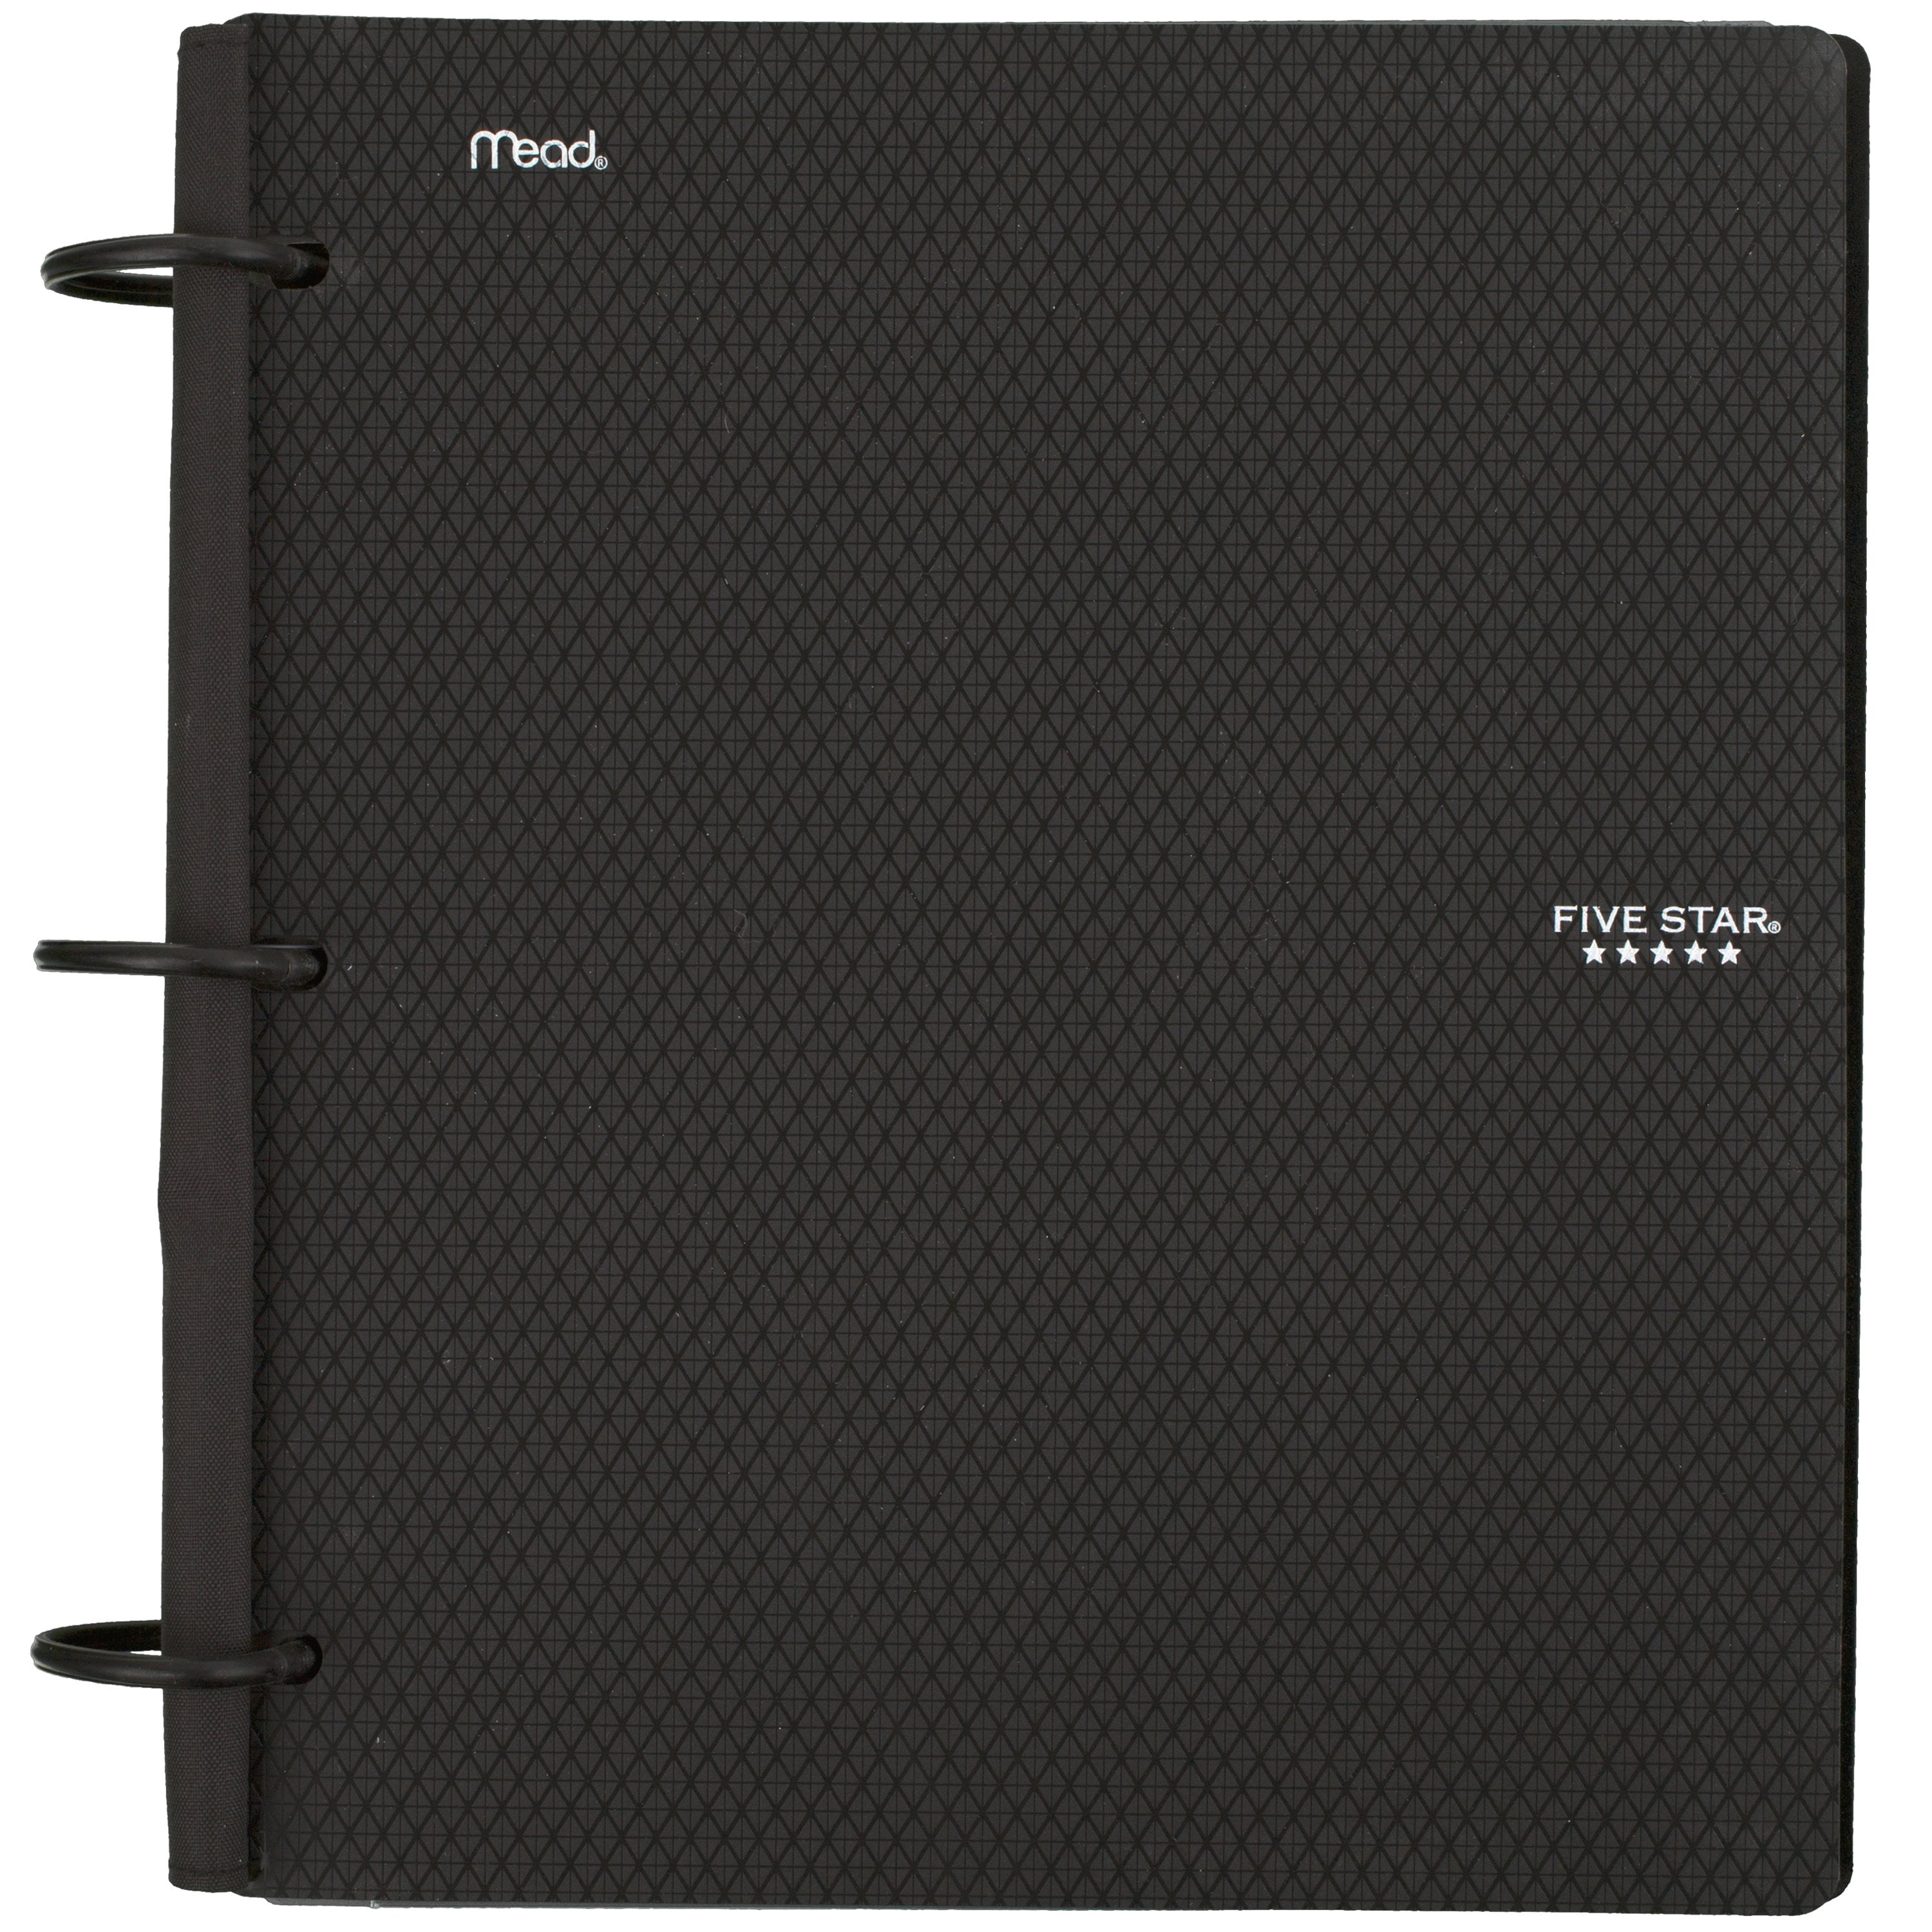 1 Inch Binder Notebook and Binder All-in-One Purple Five Star Flex Hybrid NoteBinder 29328AB6